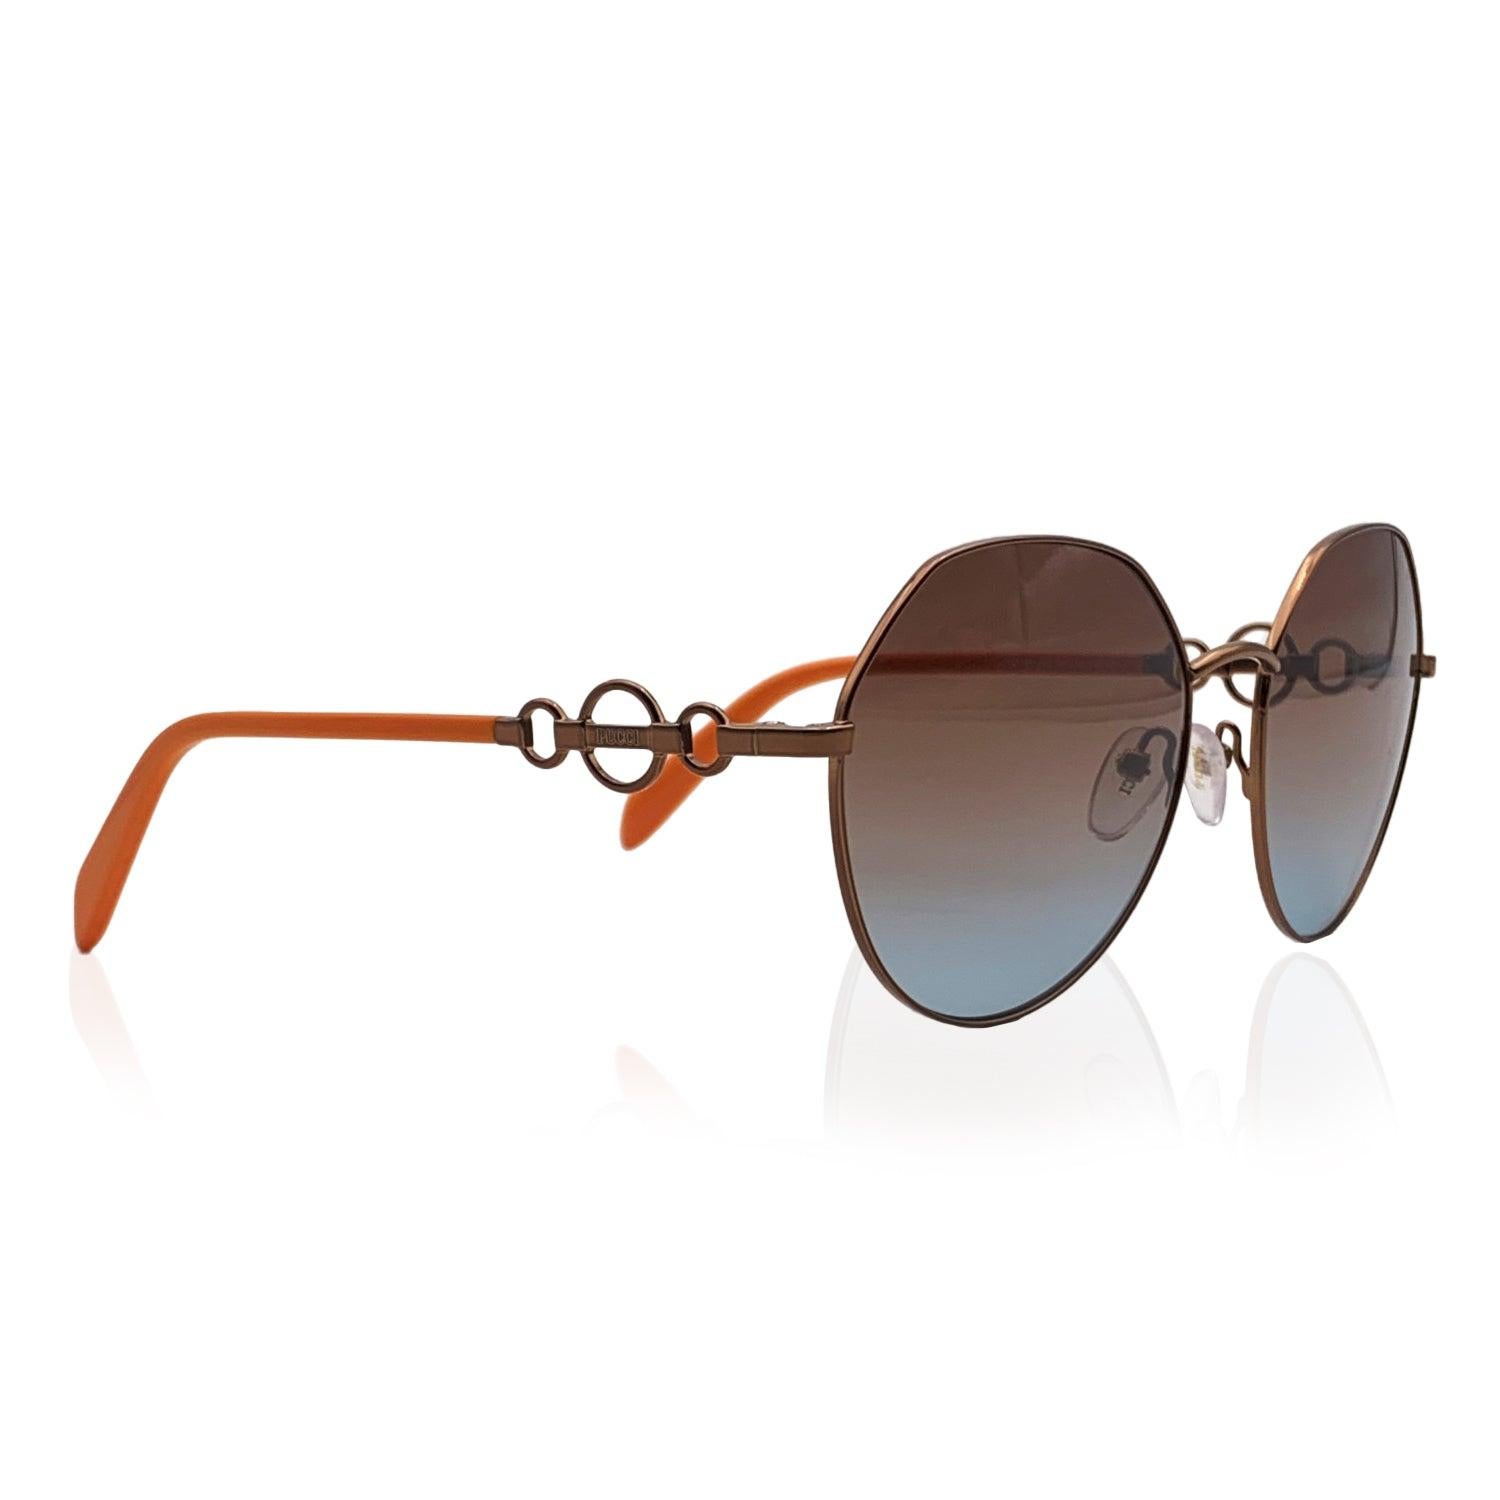 Superbes lunettes de soleil pour femme créées par Emilio Pucci, mod. EP 0150 - 36 F. Monture arrondie en métal bronze avec branches orange. Verres gradients bruns originaux de haute qualité, protection UV à 100 %. Importé Détails MATERIAL : Métal